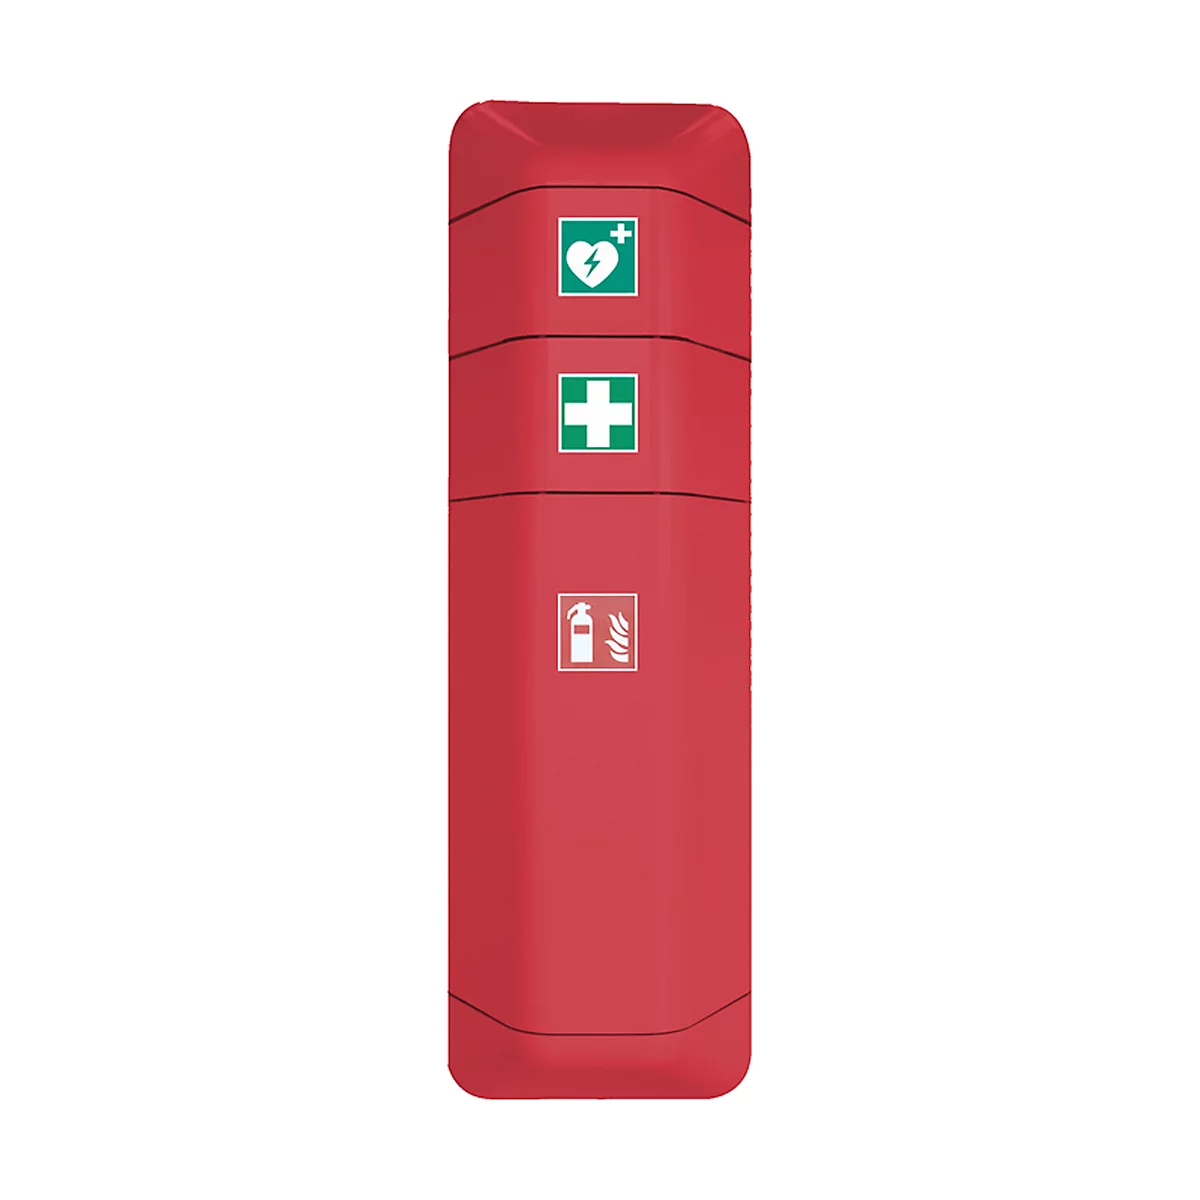 Accesorio para desfibrilador, para ayuda del armario de extintores, ancho 434 x fondo 225 x alto 196 mm, rojo